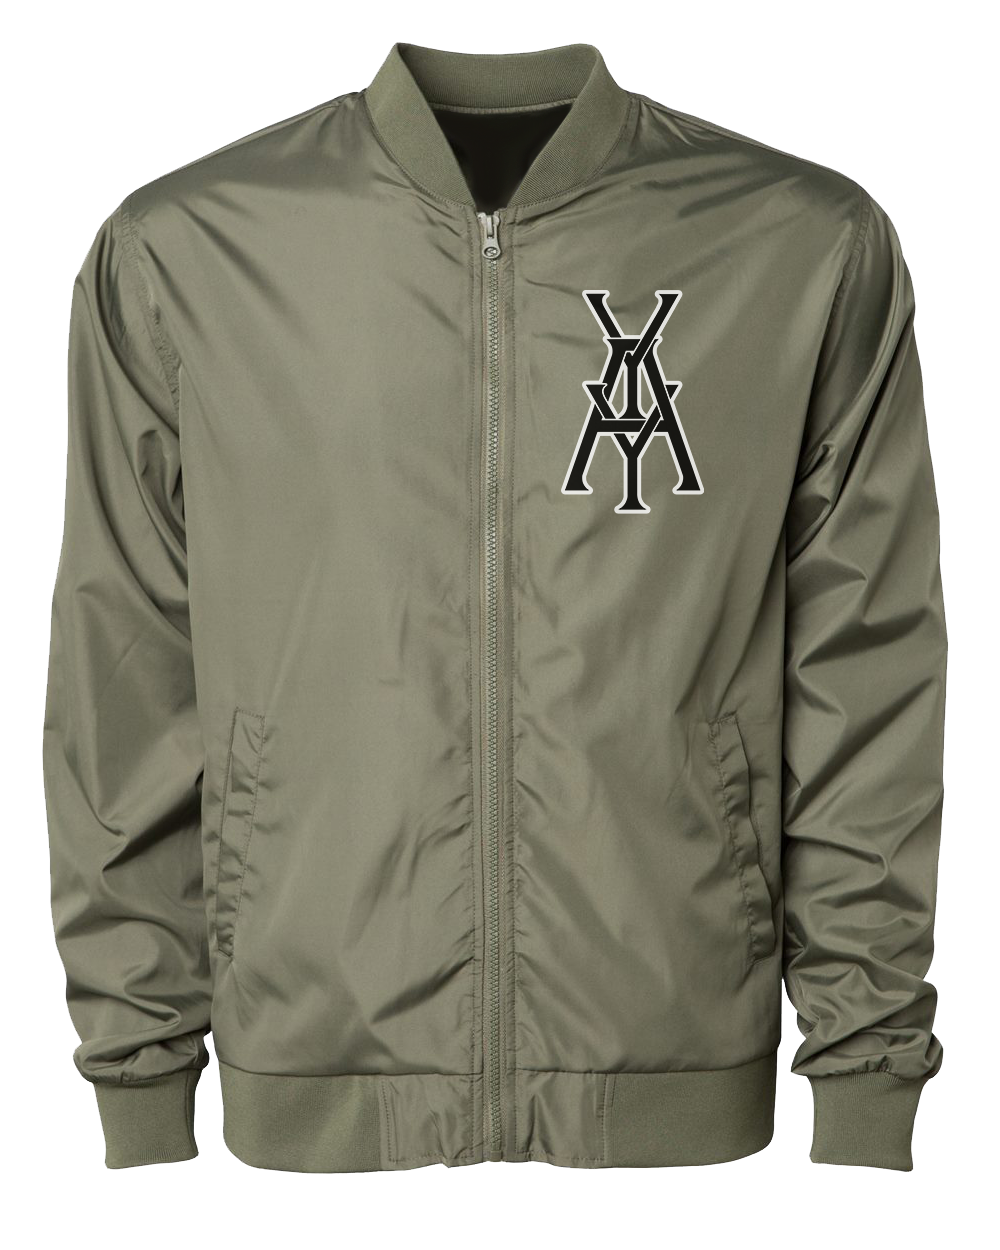 Mono YAY JFK NYCBG Bomber Jacket (Army Green)